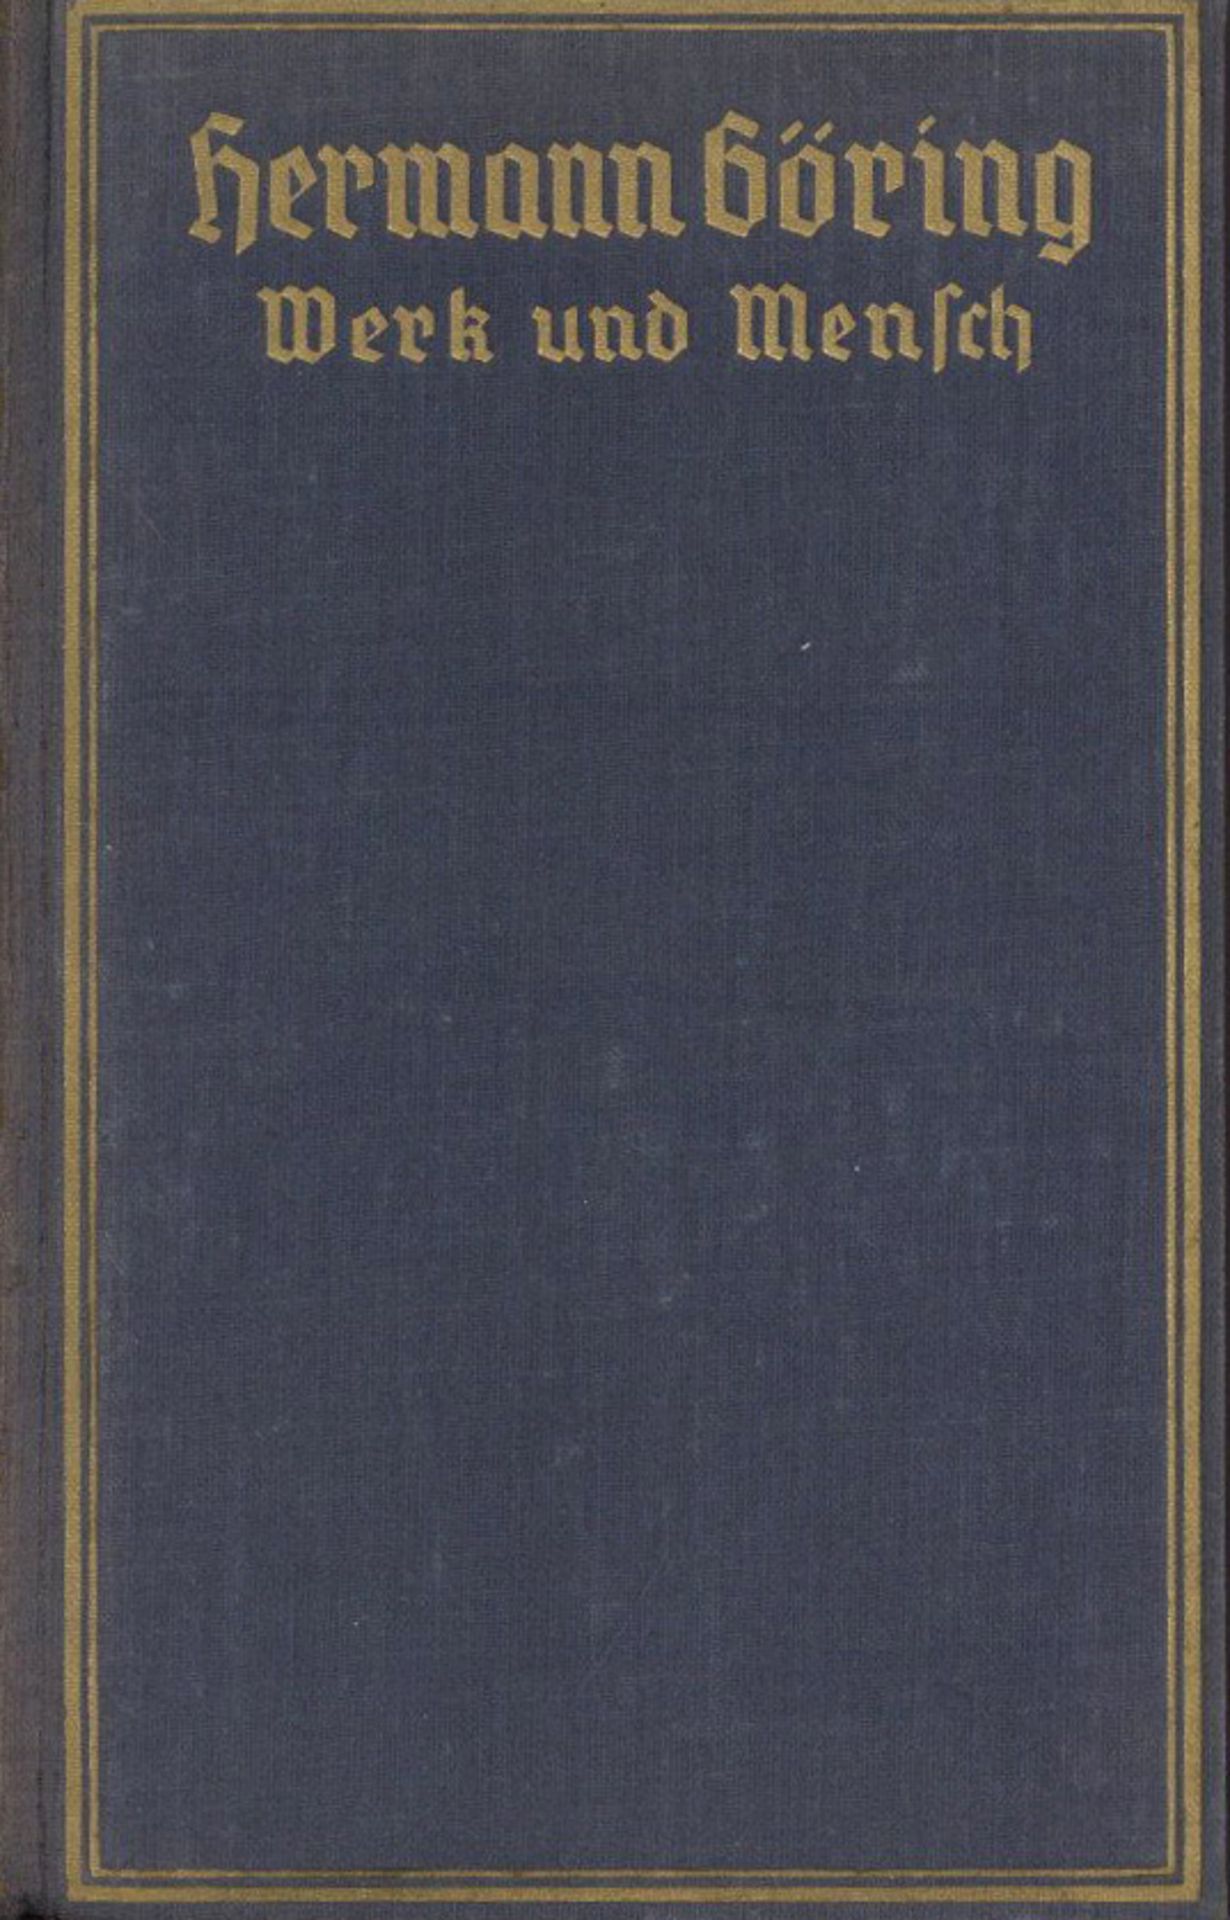 Buch WK II Hermann Göring Werk und Mensch von Gritzbach, Erich 1938 Zentralverlag der NSDAP Franz